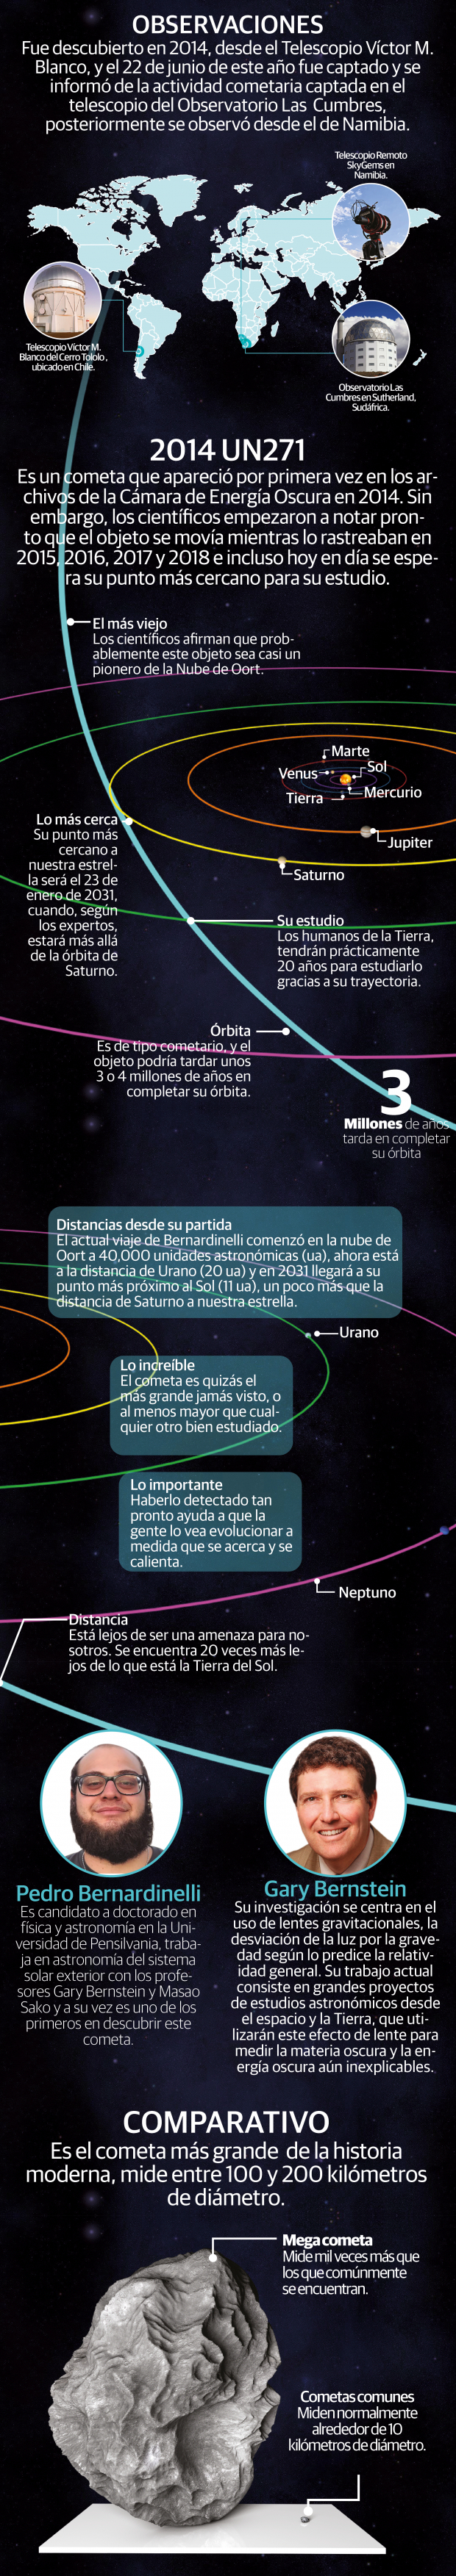 El enorme cometa Bernardinelli-Bernstein se acerca a la Tierra en el año 2031